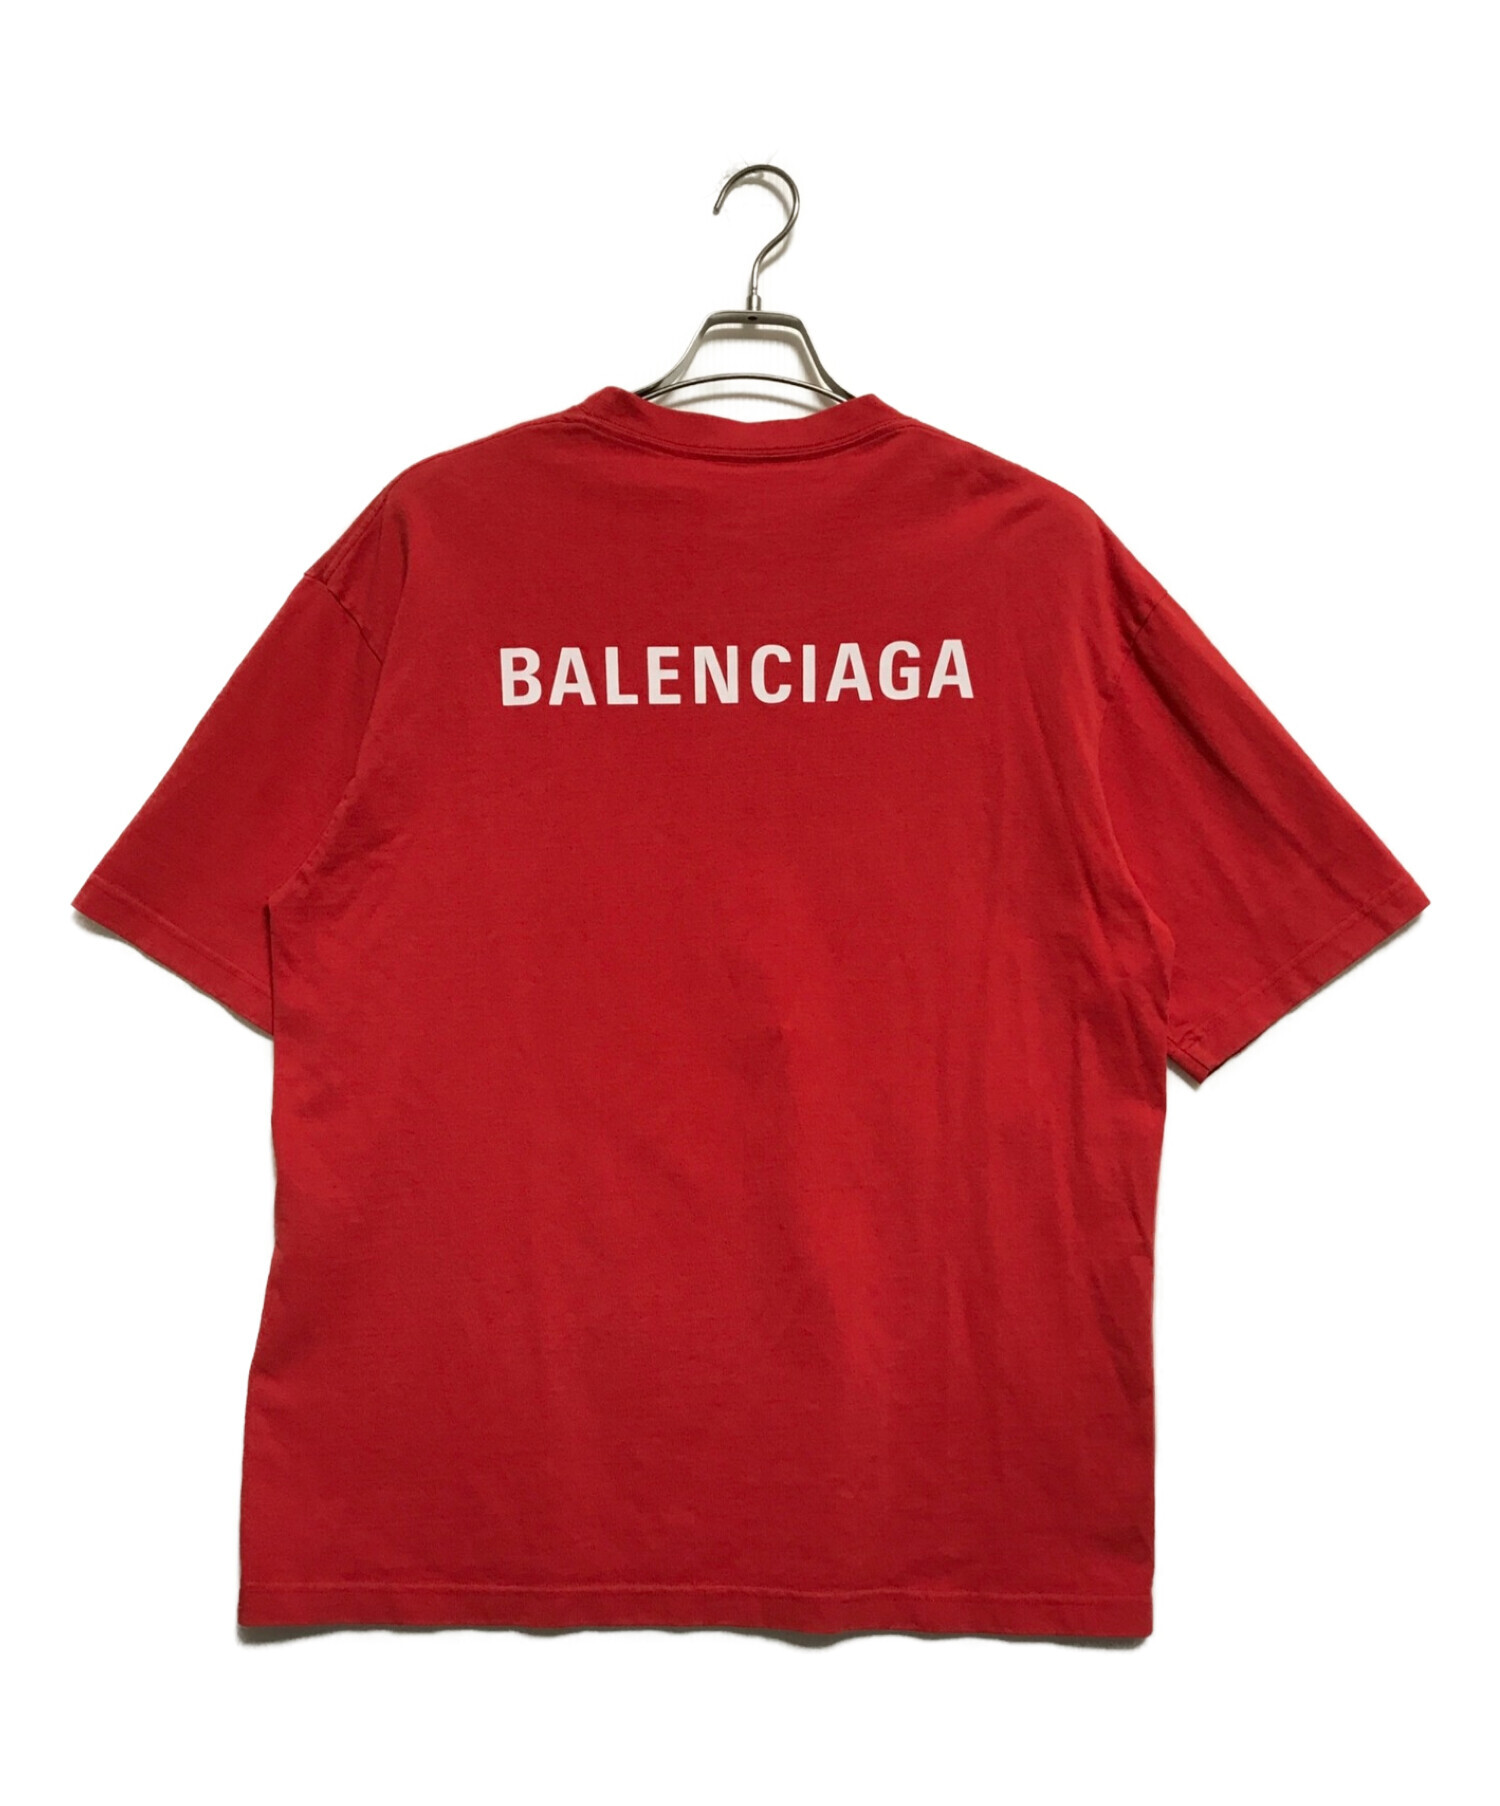 BALENCIAGA (バレンシアガ) プリントロゴカットソー レッド サイズ:S